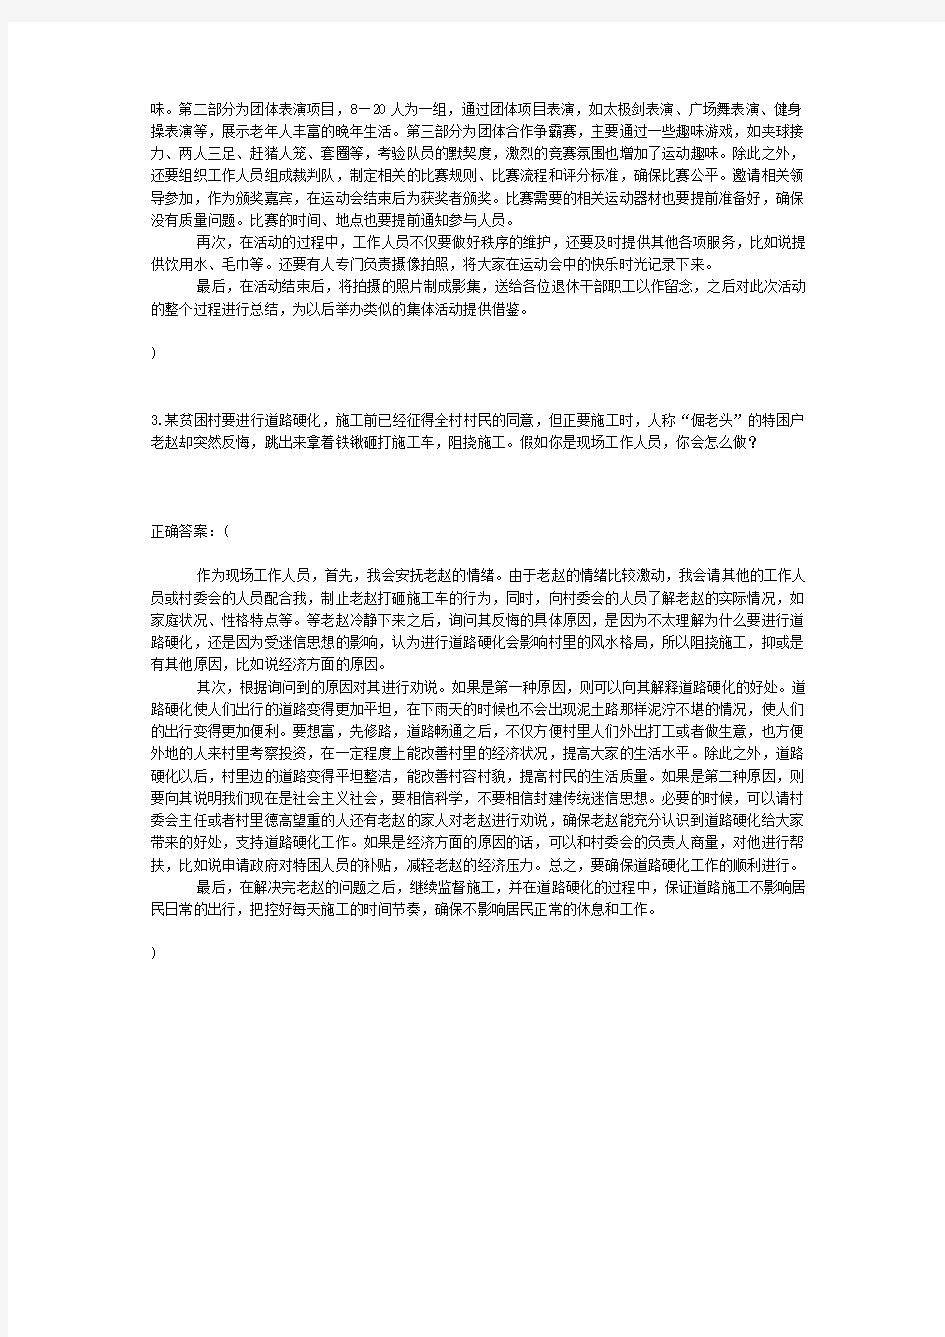 2017年7月17日贵州省公务员考试面试真题